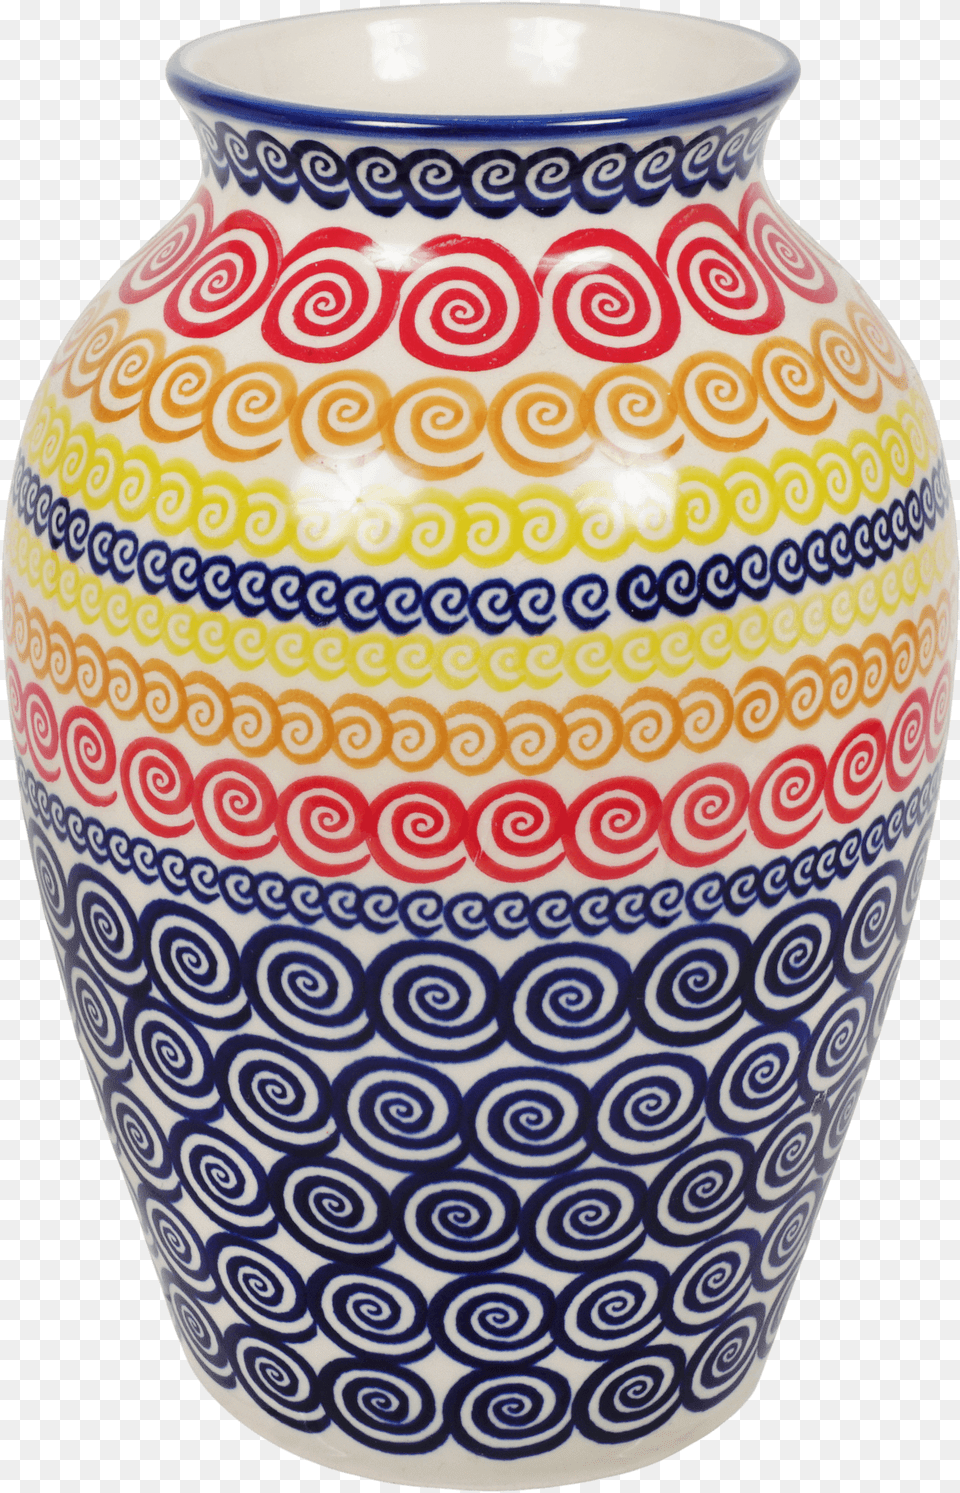 Vase, Art, Jar, Porcelain, Pottery Png